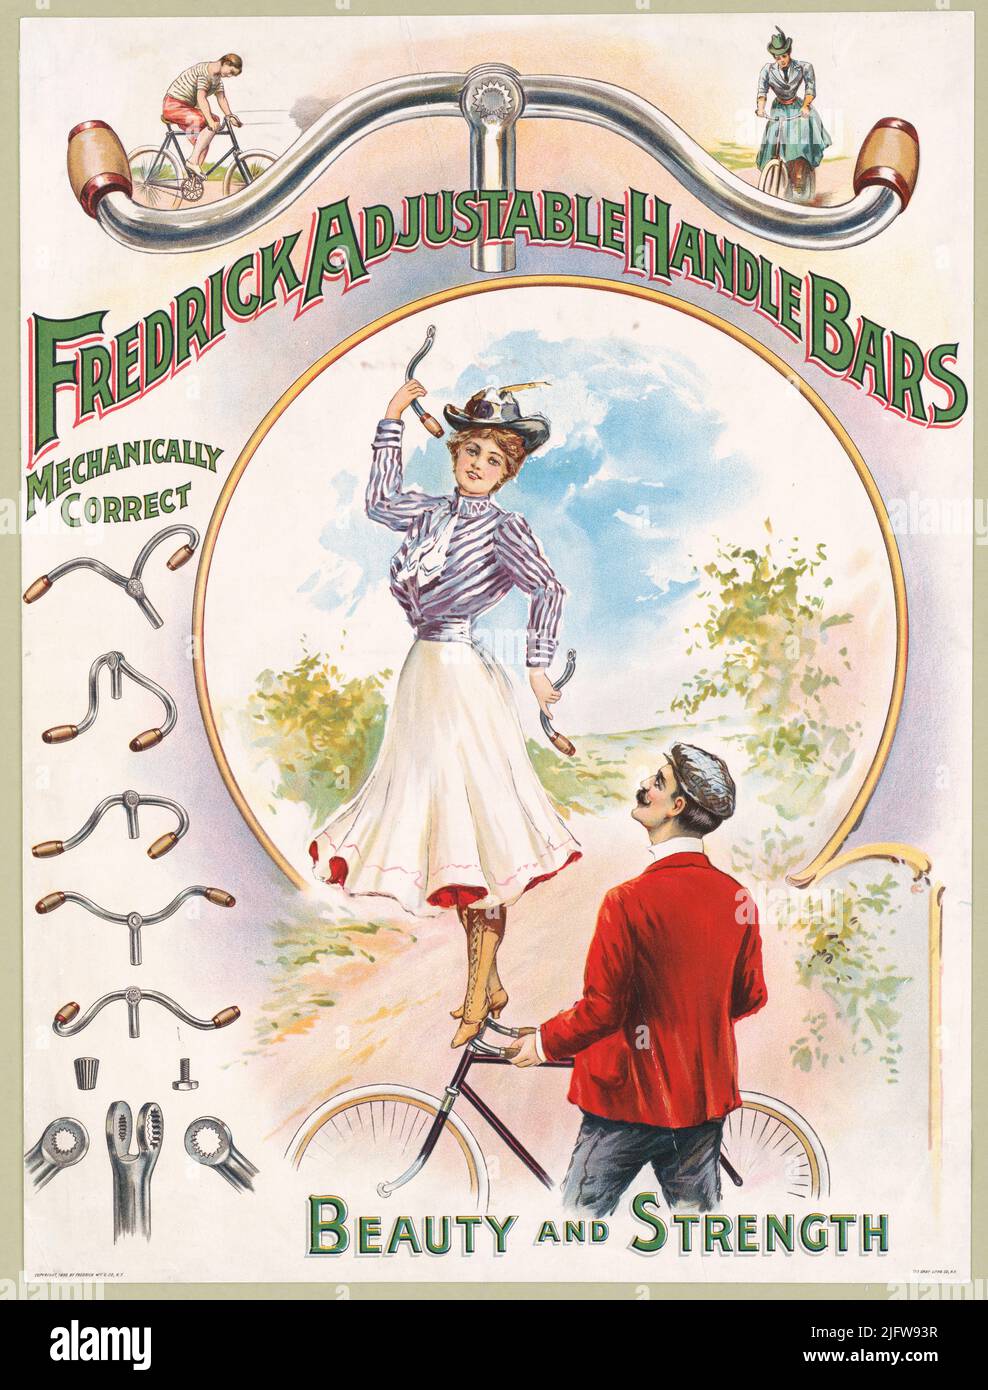 19th Century annonce pour Frederick réglable barres de poignée de vélo, mécaniquement correct, beauté et force. Lithographie par Gray Litho. Co Banque D'Images